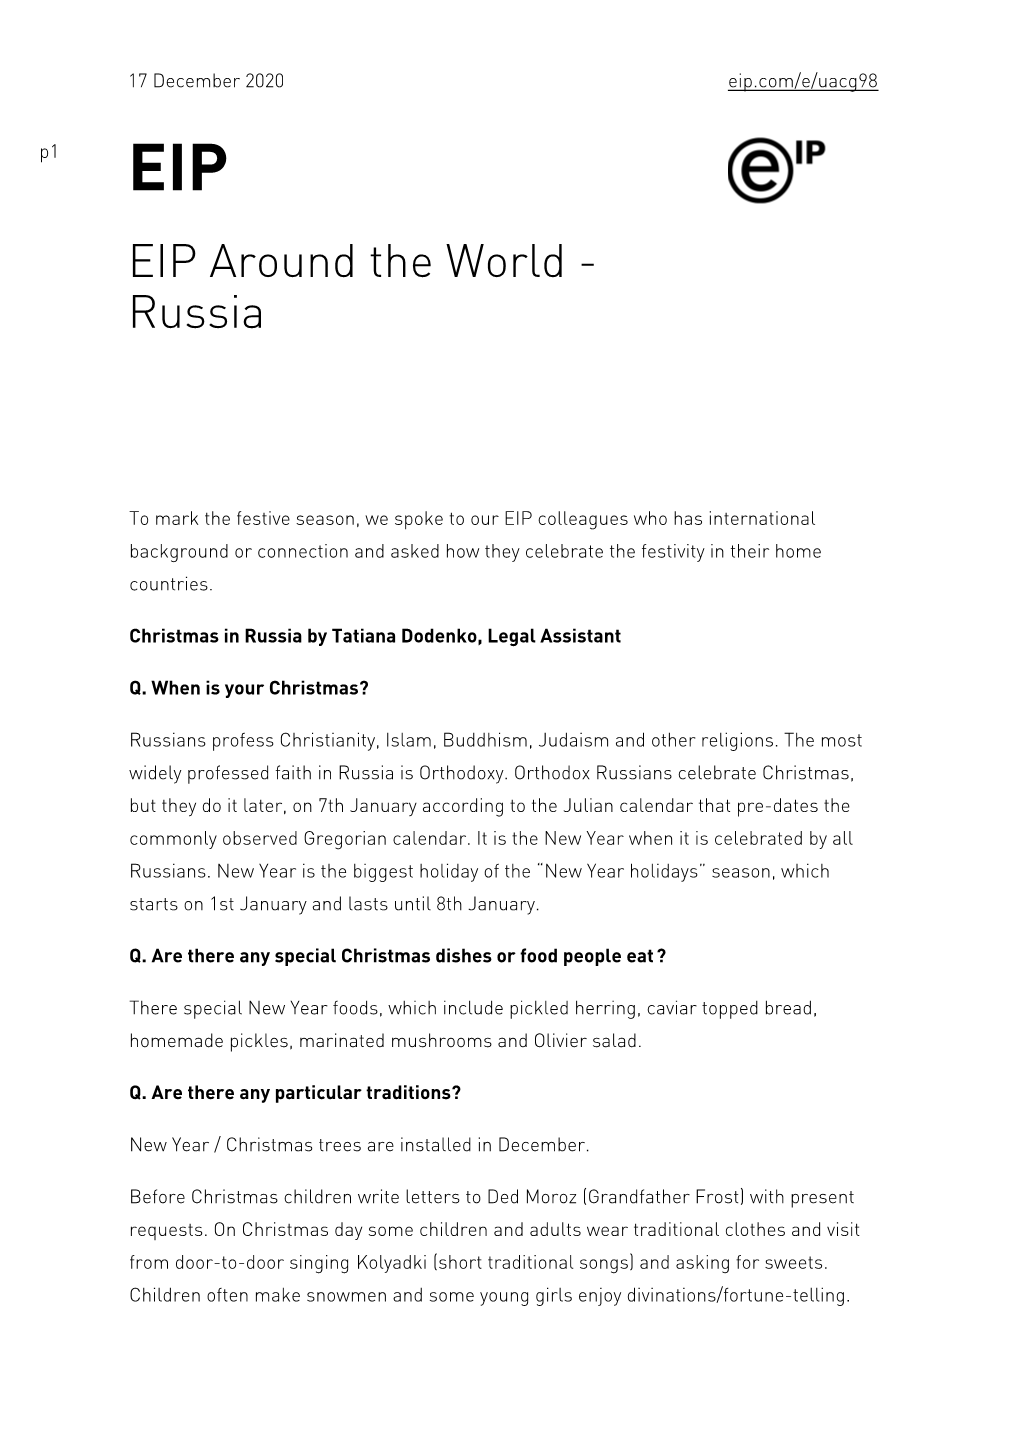 EIP Around the World - Russia